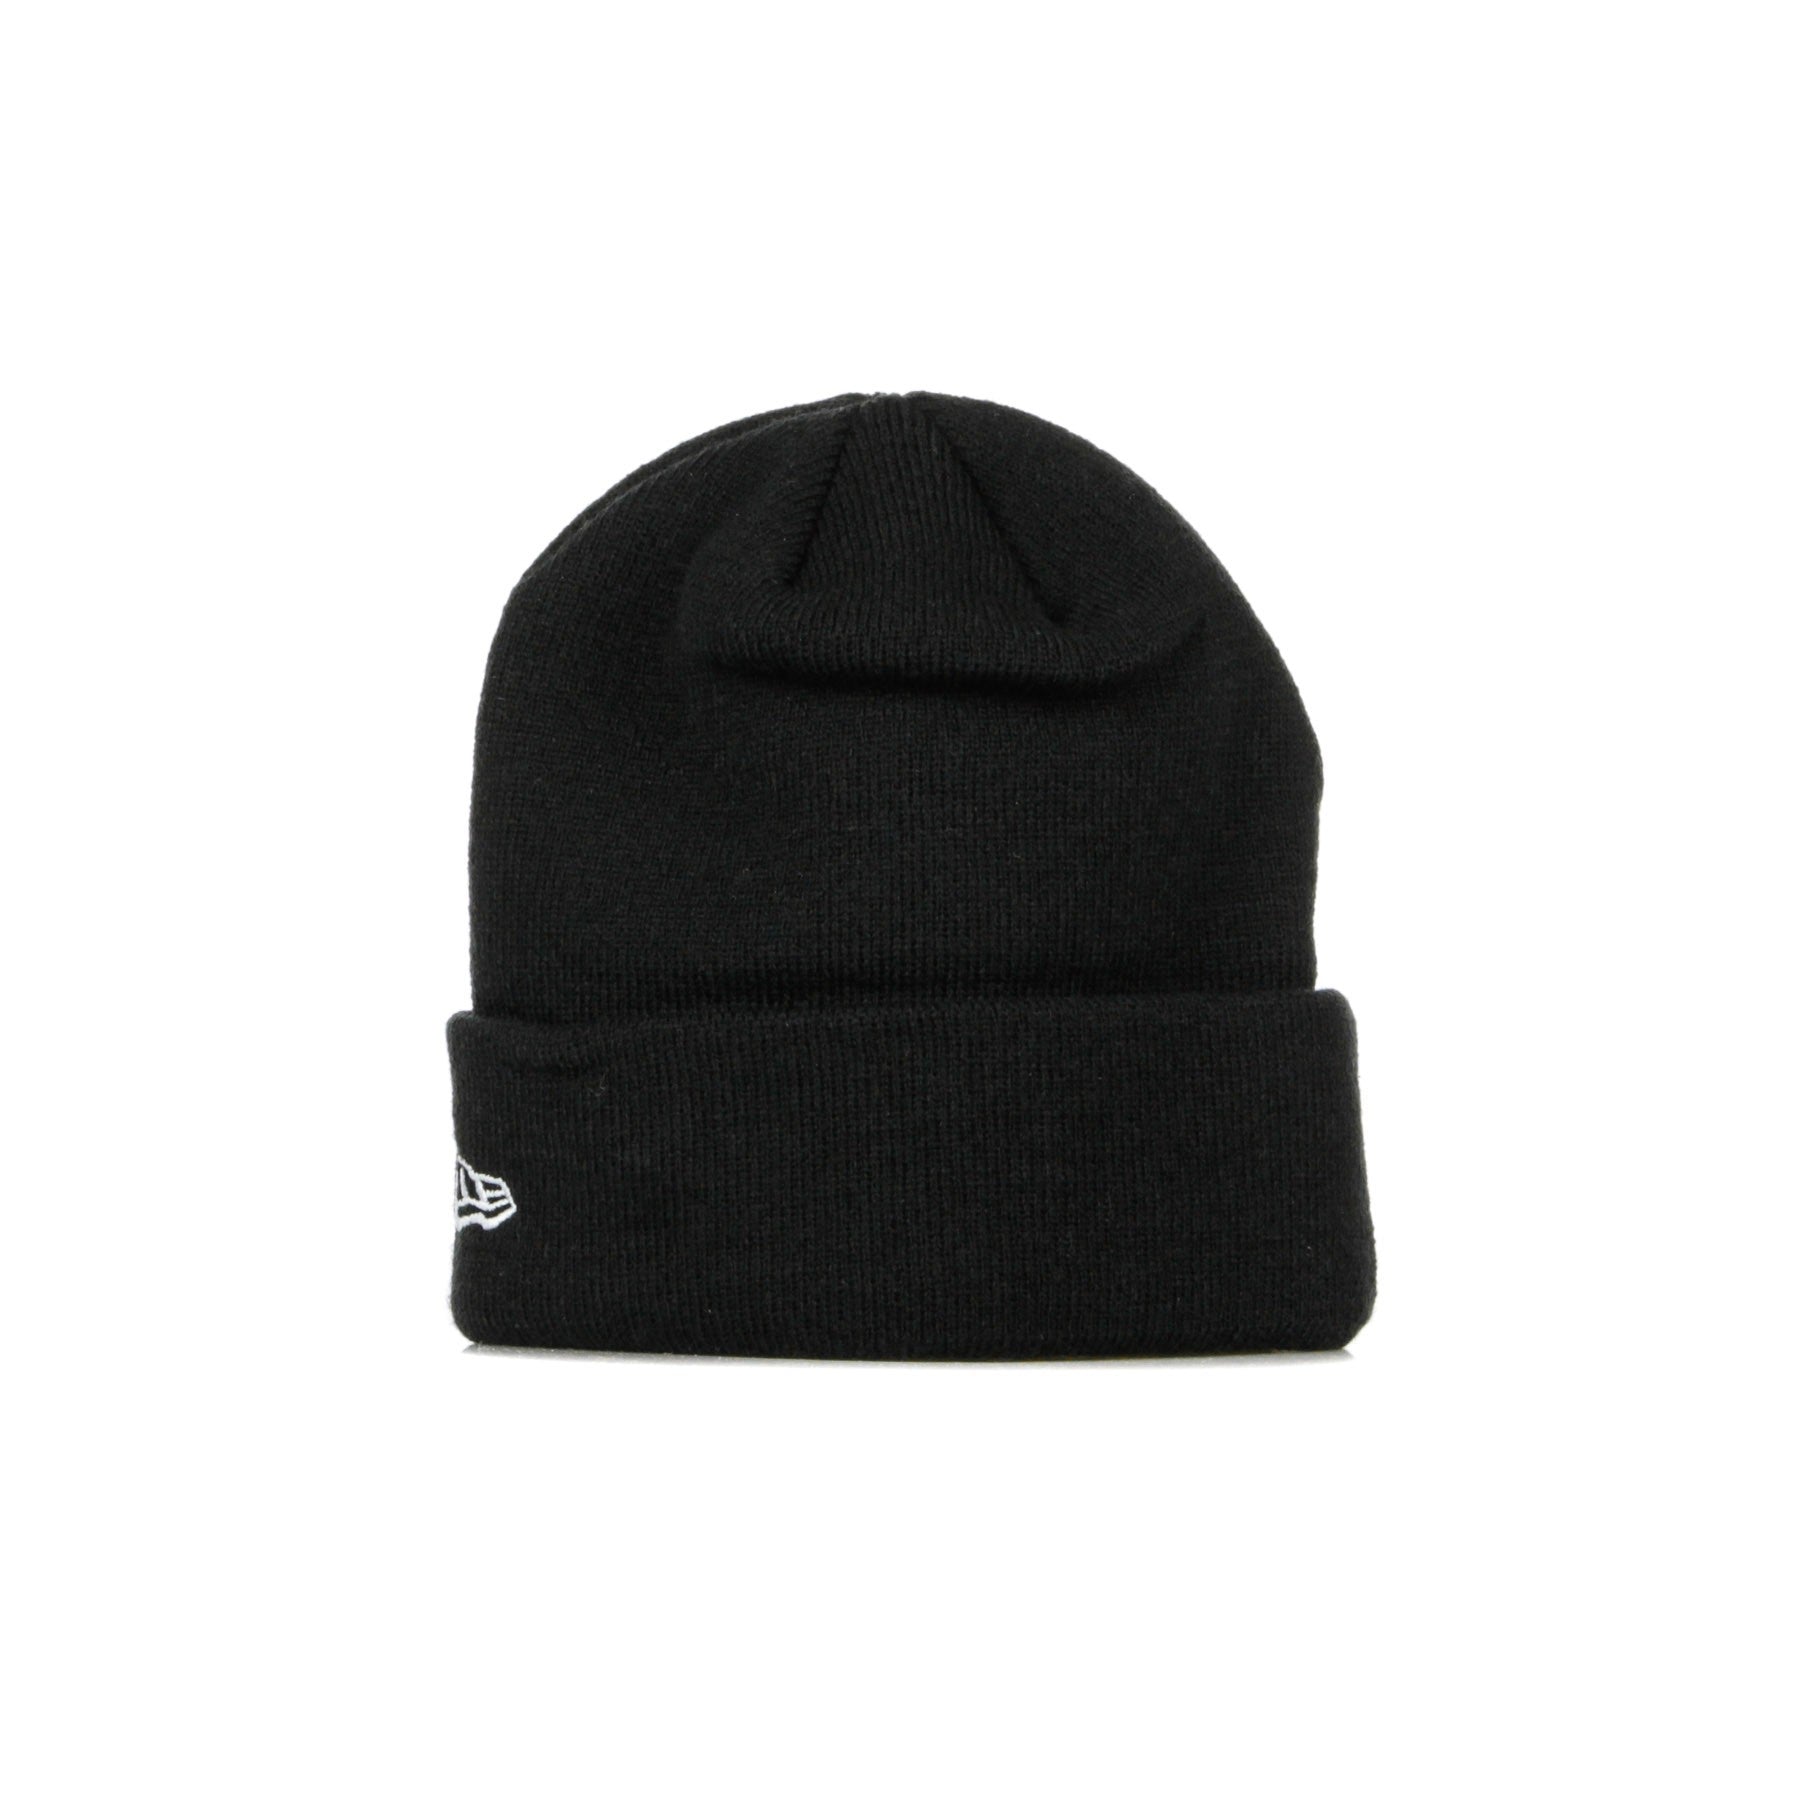 New Era, Cappello Uomo Nfl Essential Cuff Knit Lasrai, Black